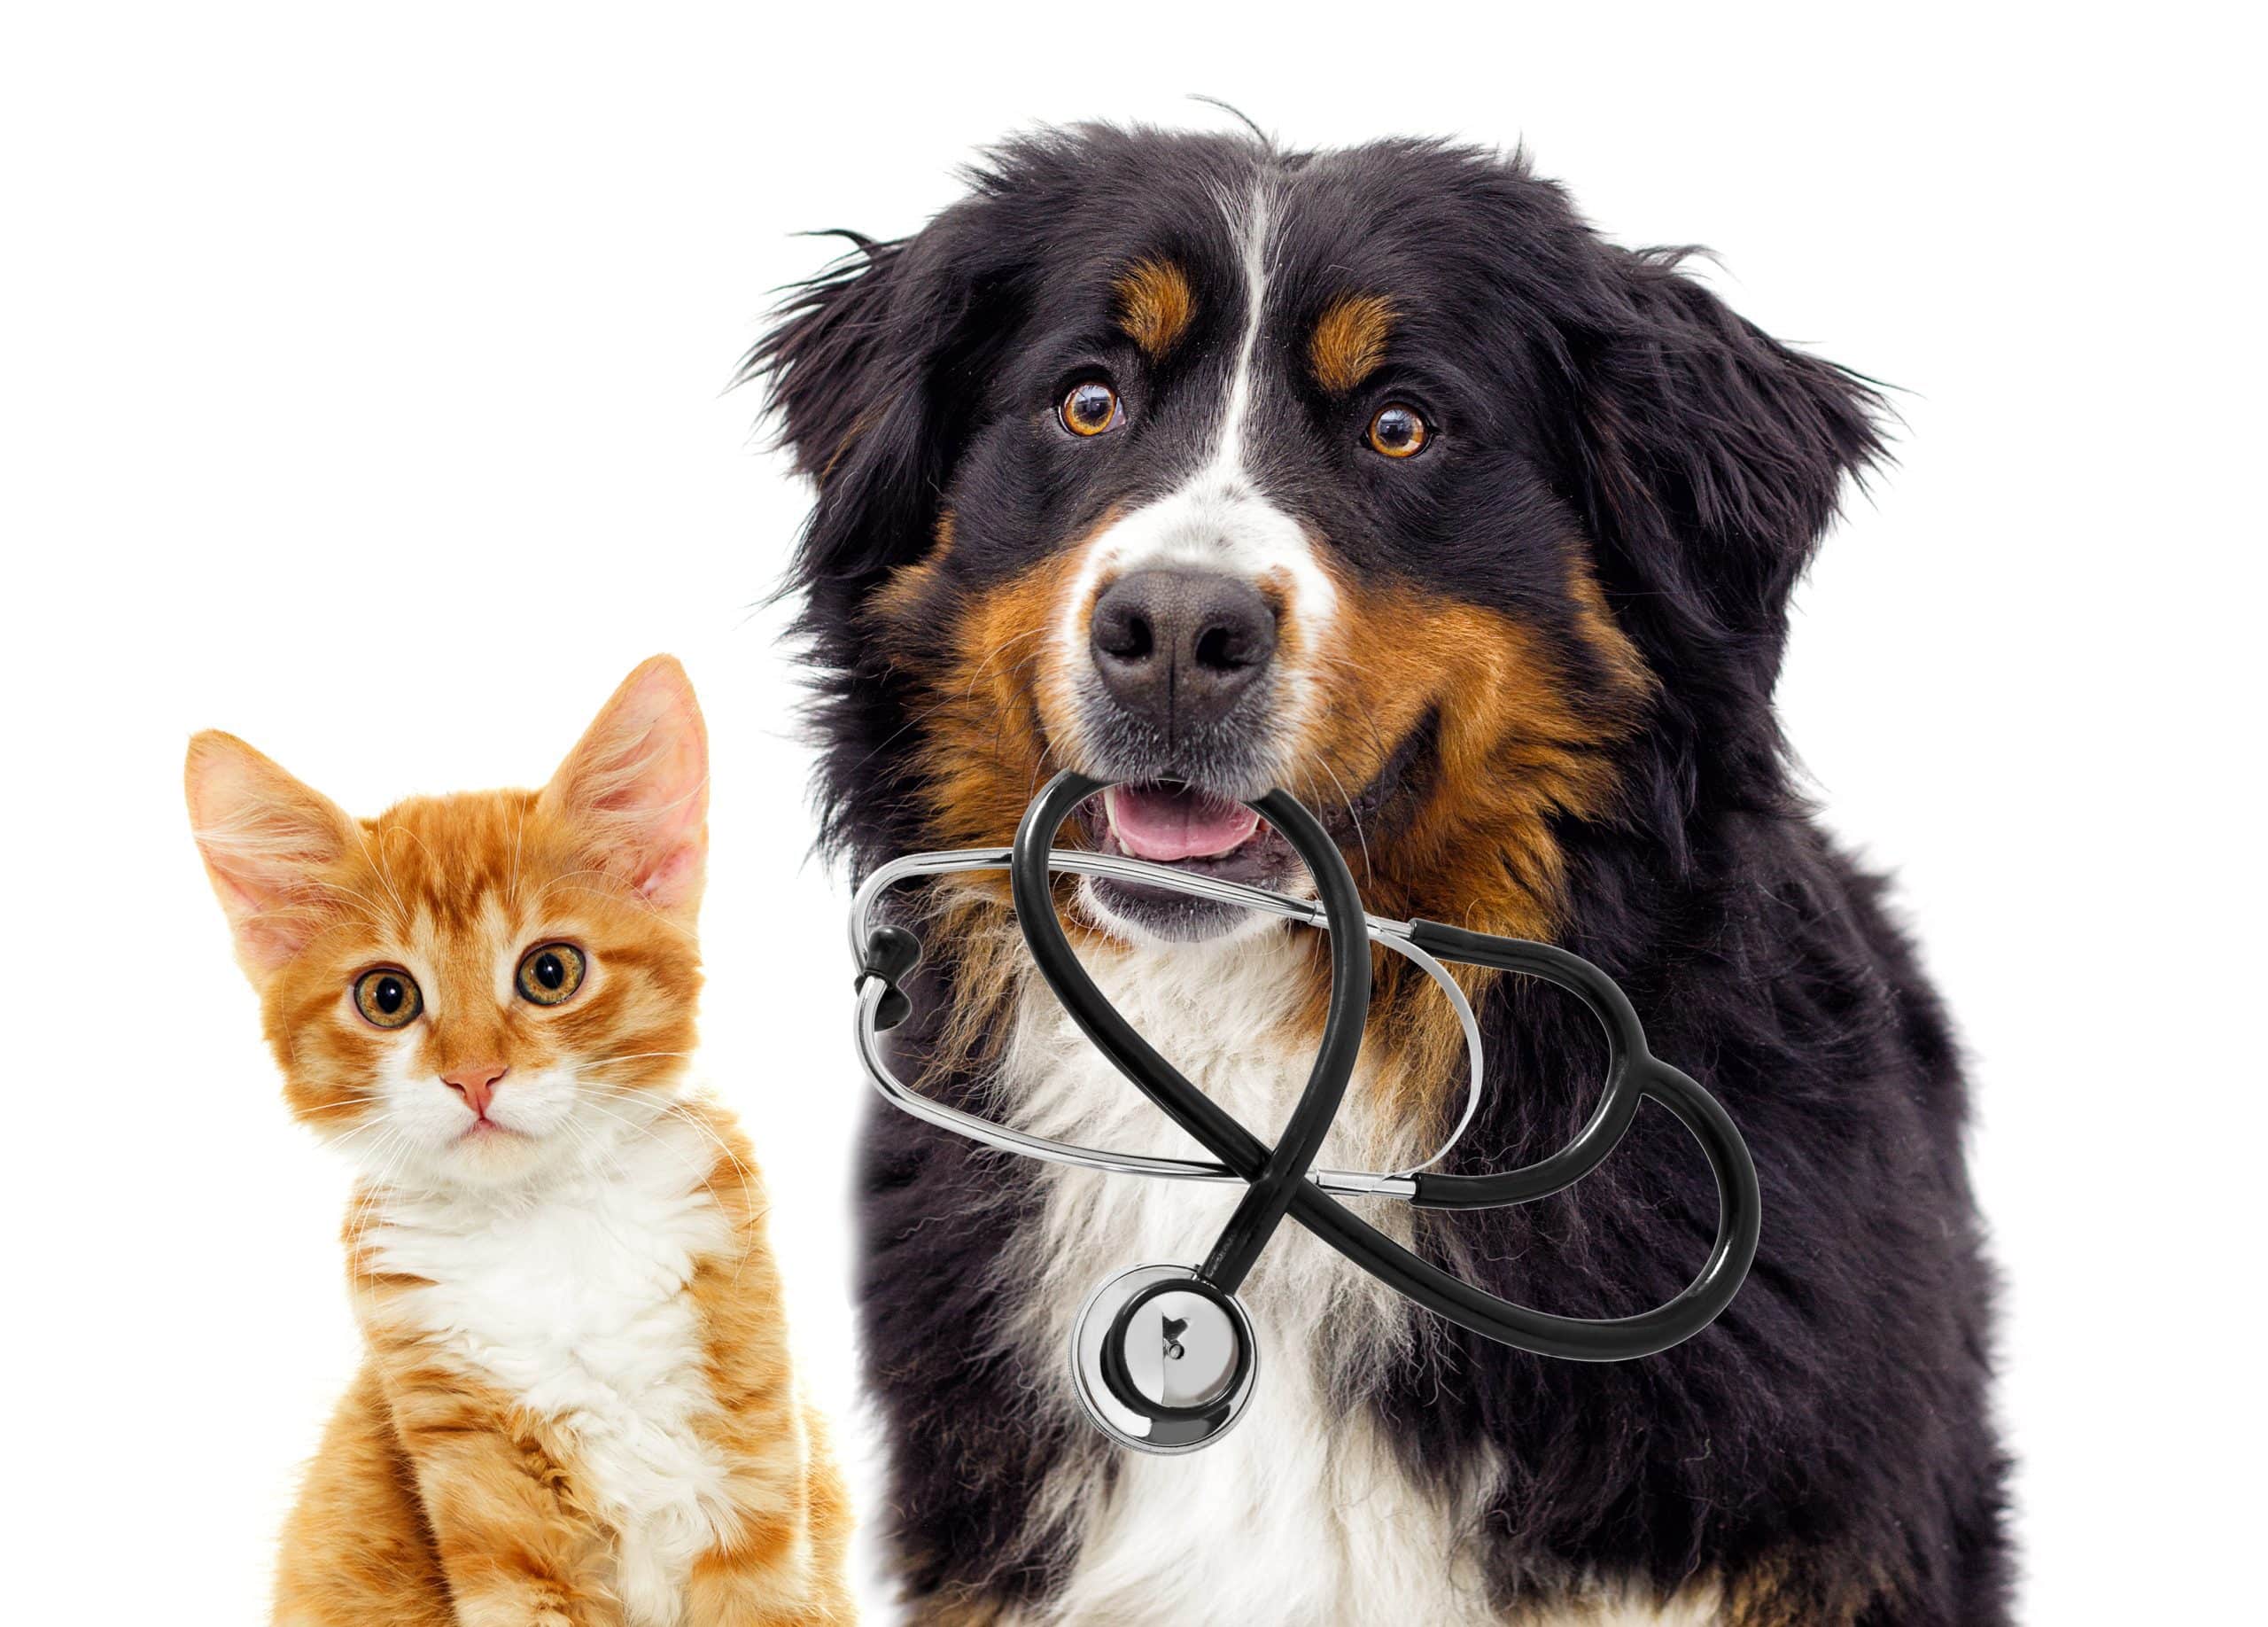 Black dog holding stethoscope sitting with orange cat